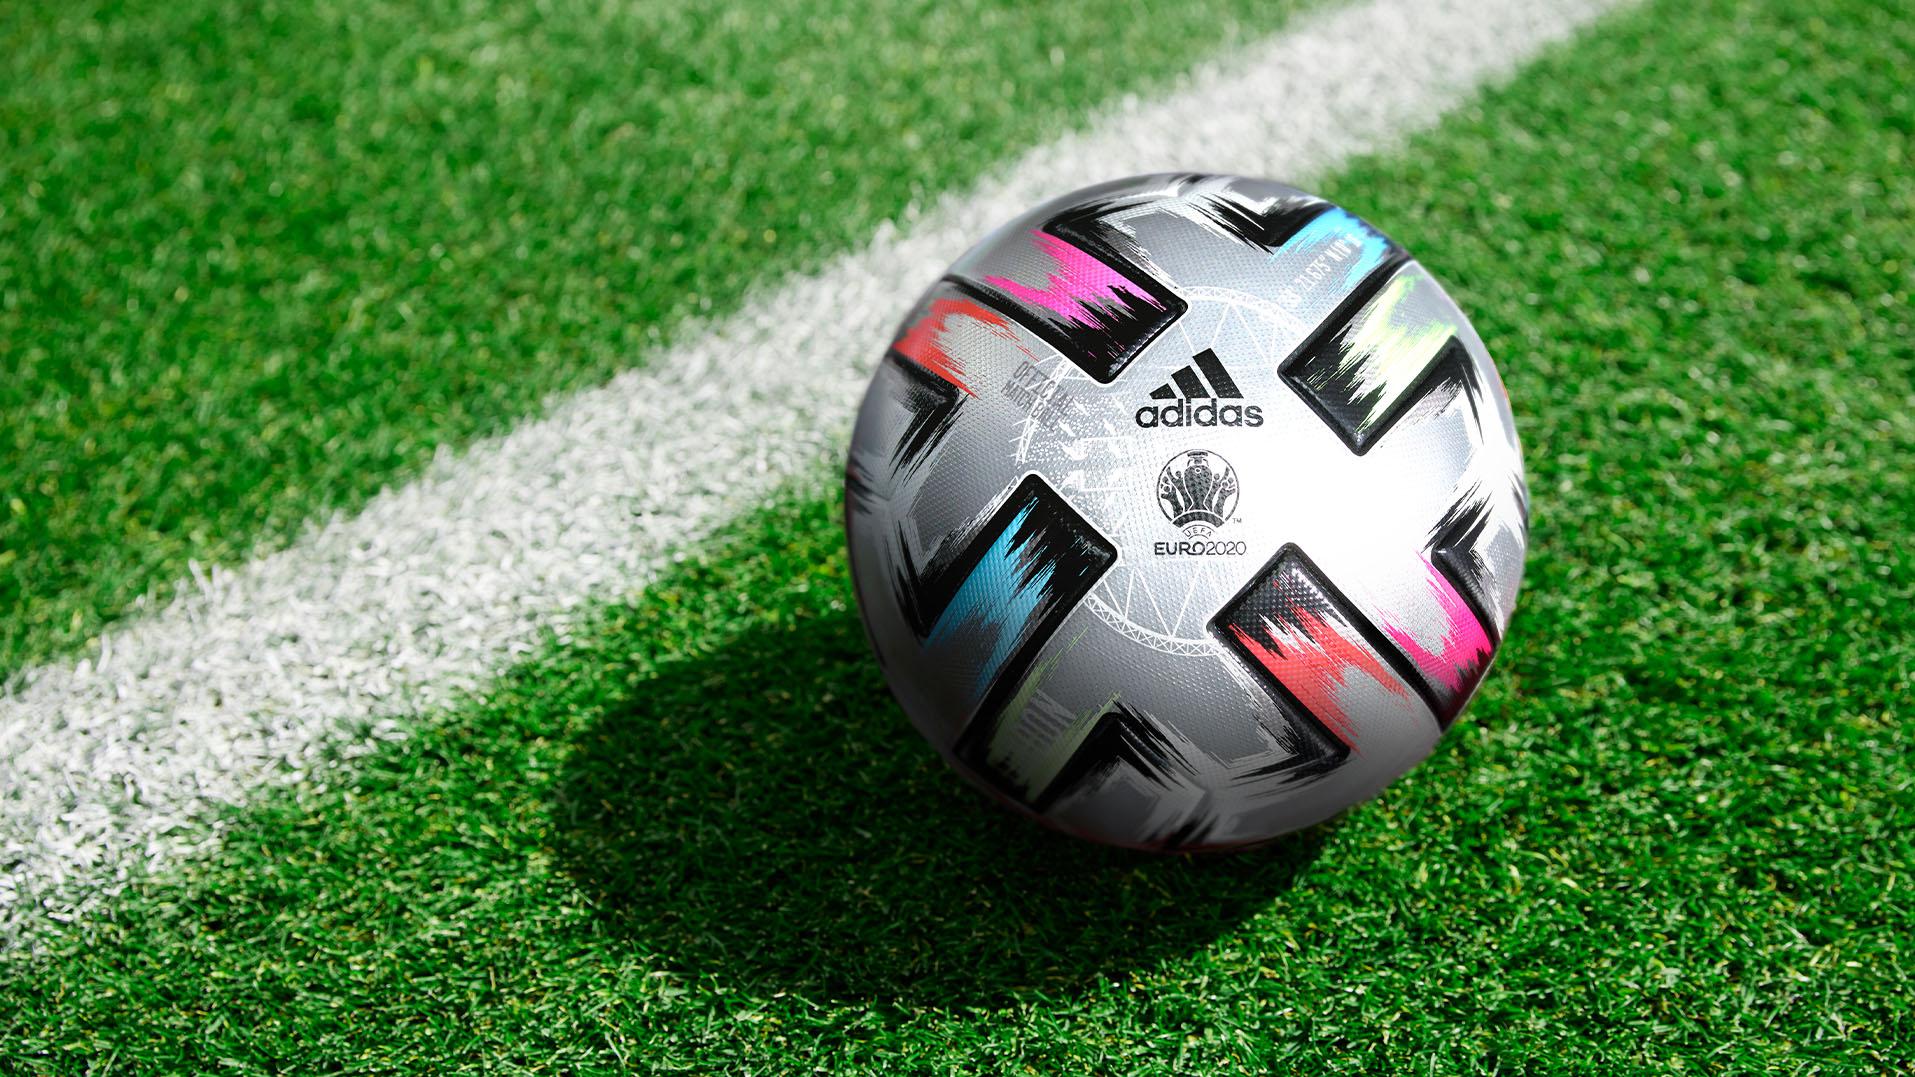 presenta el balón para las semifinales y la final de la EURO 2020 | la UEFA | UEFA.com